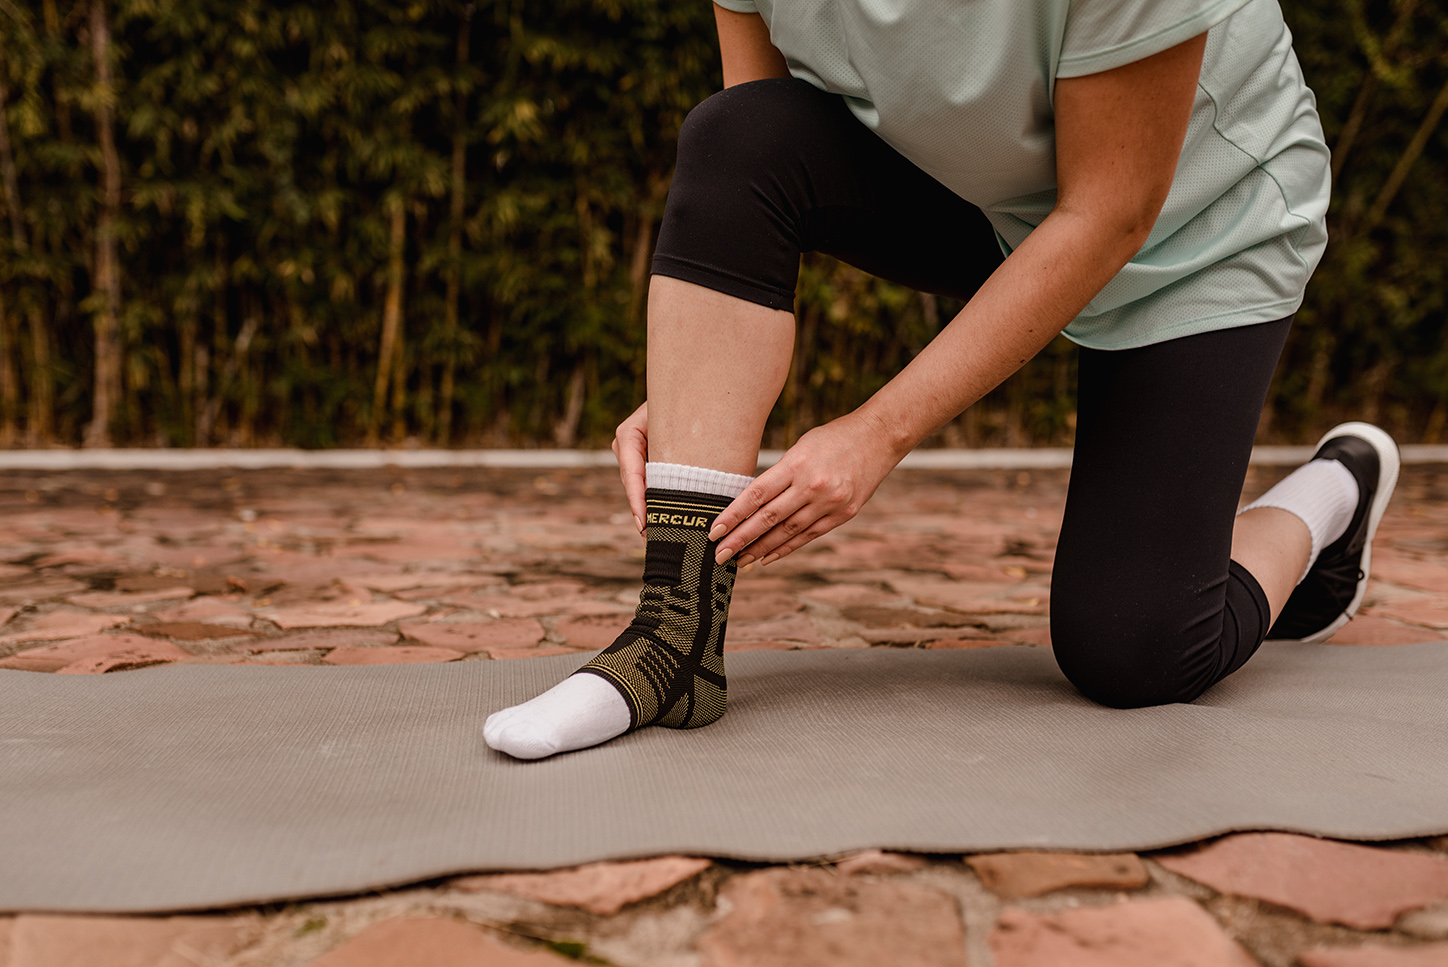 Uma mulher está ajustando a Tornozeleira de Compressão Elástica da Mercur, preta com verde no seu pé direito que está apoiado em um tapete de yoga. Seu joelho esquerdo está no chão para dar apoio. 